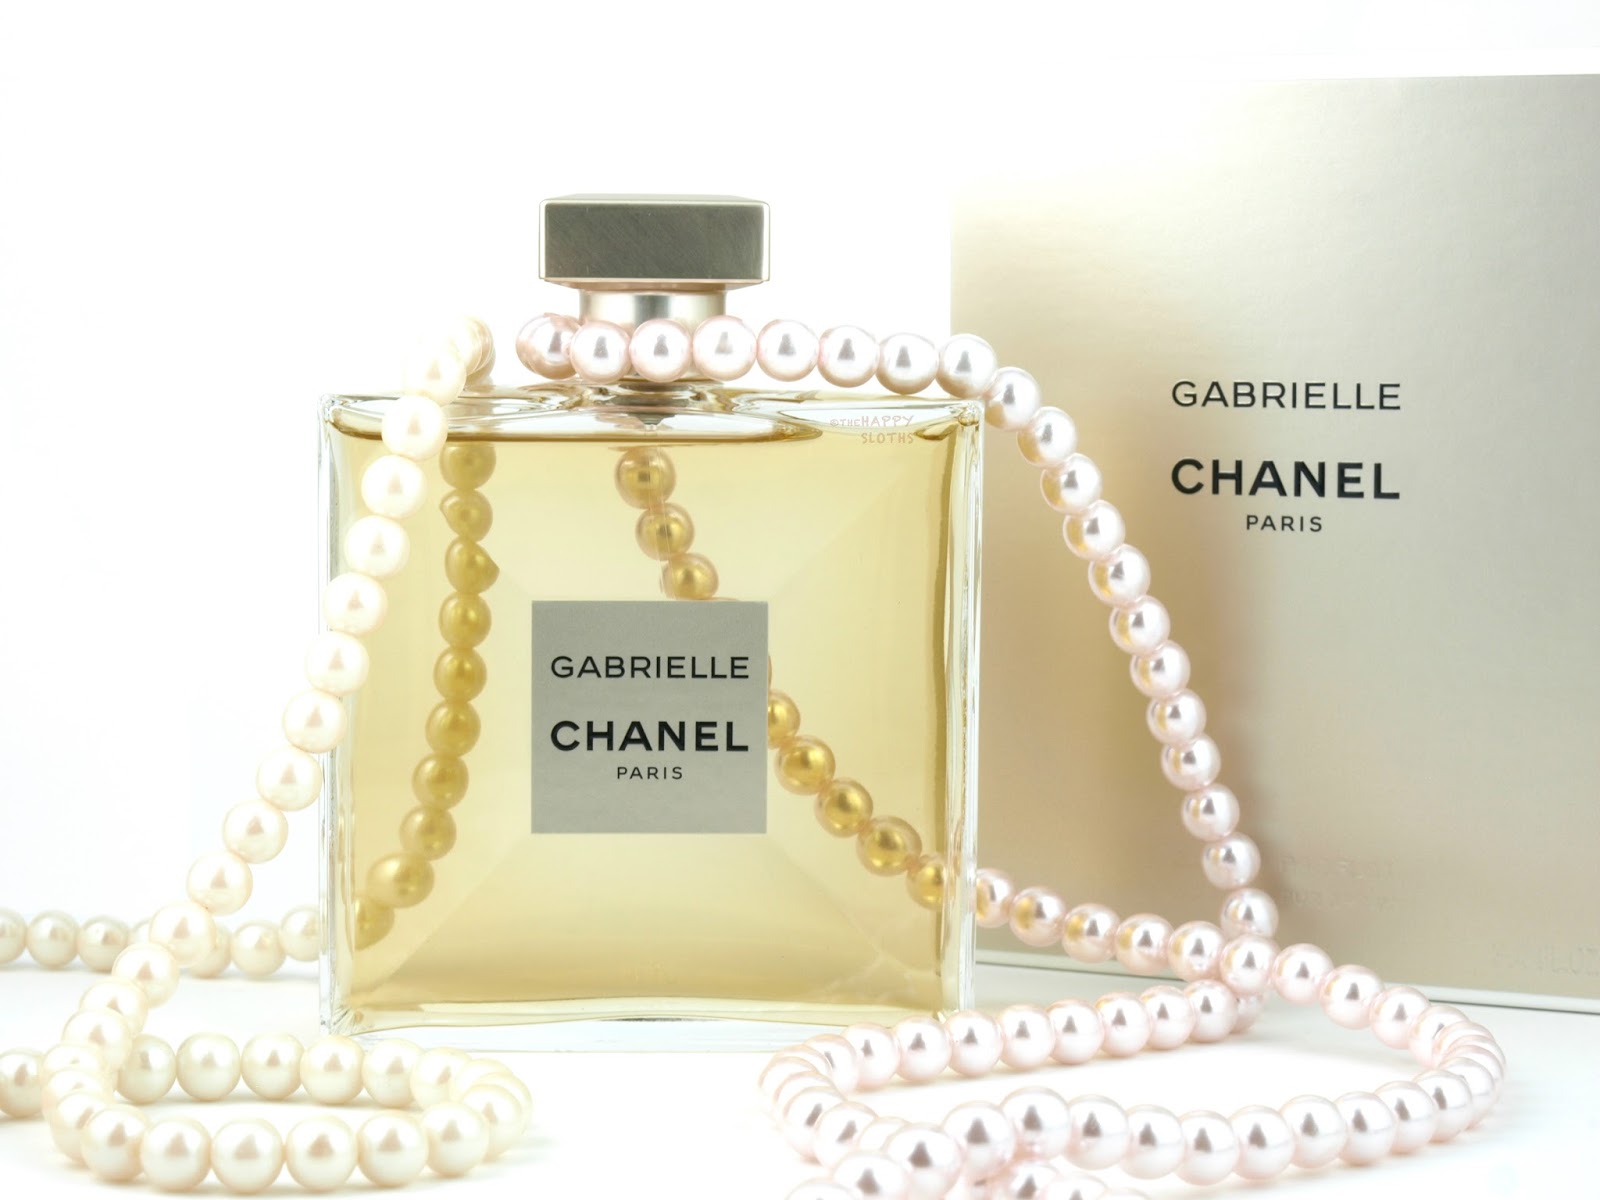 Chanel Gabrielle Chanel Eau de Parfum: Review